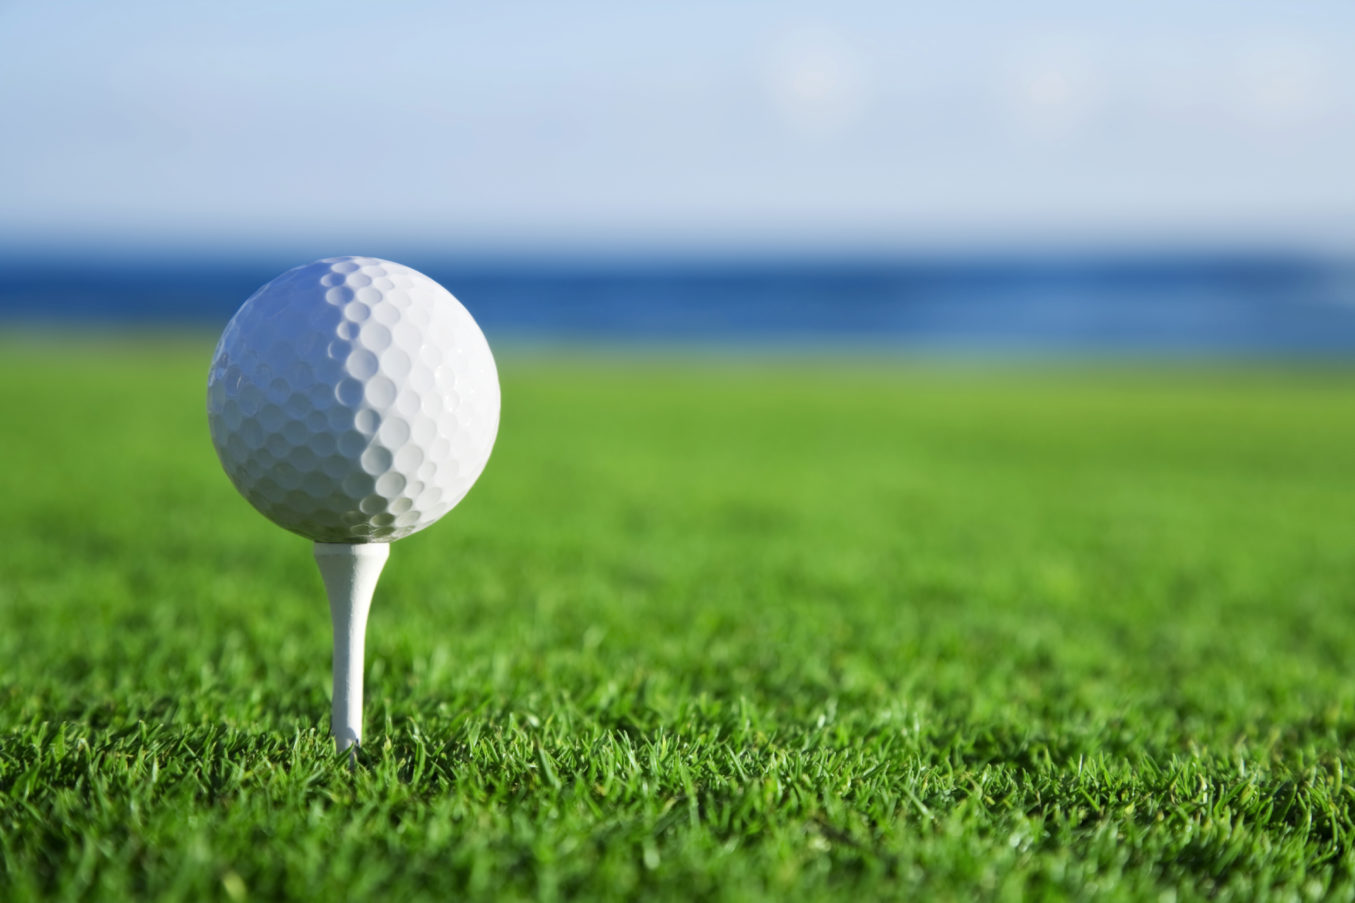 Golf Event Golf Ball on Tee Green Grass LSI, Logistical Support, Inc., Xerox, HP, Oregon, Copier, Printer, MFP, Sales, Service, Supplies